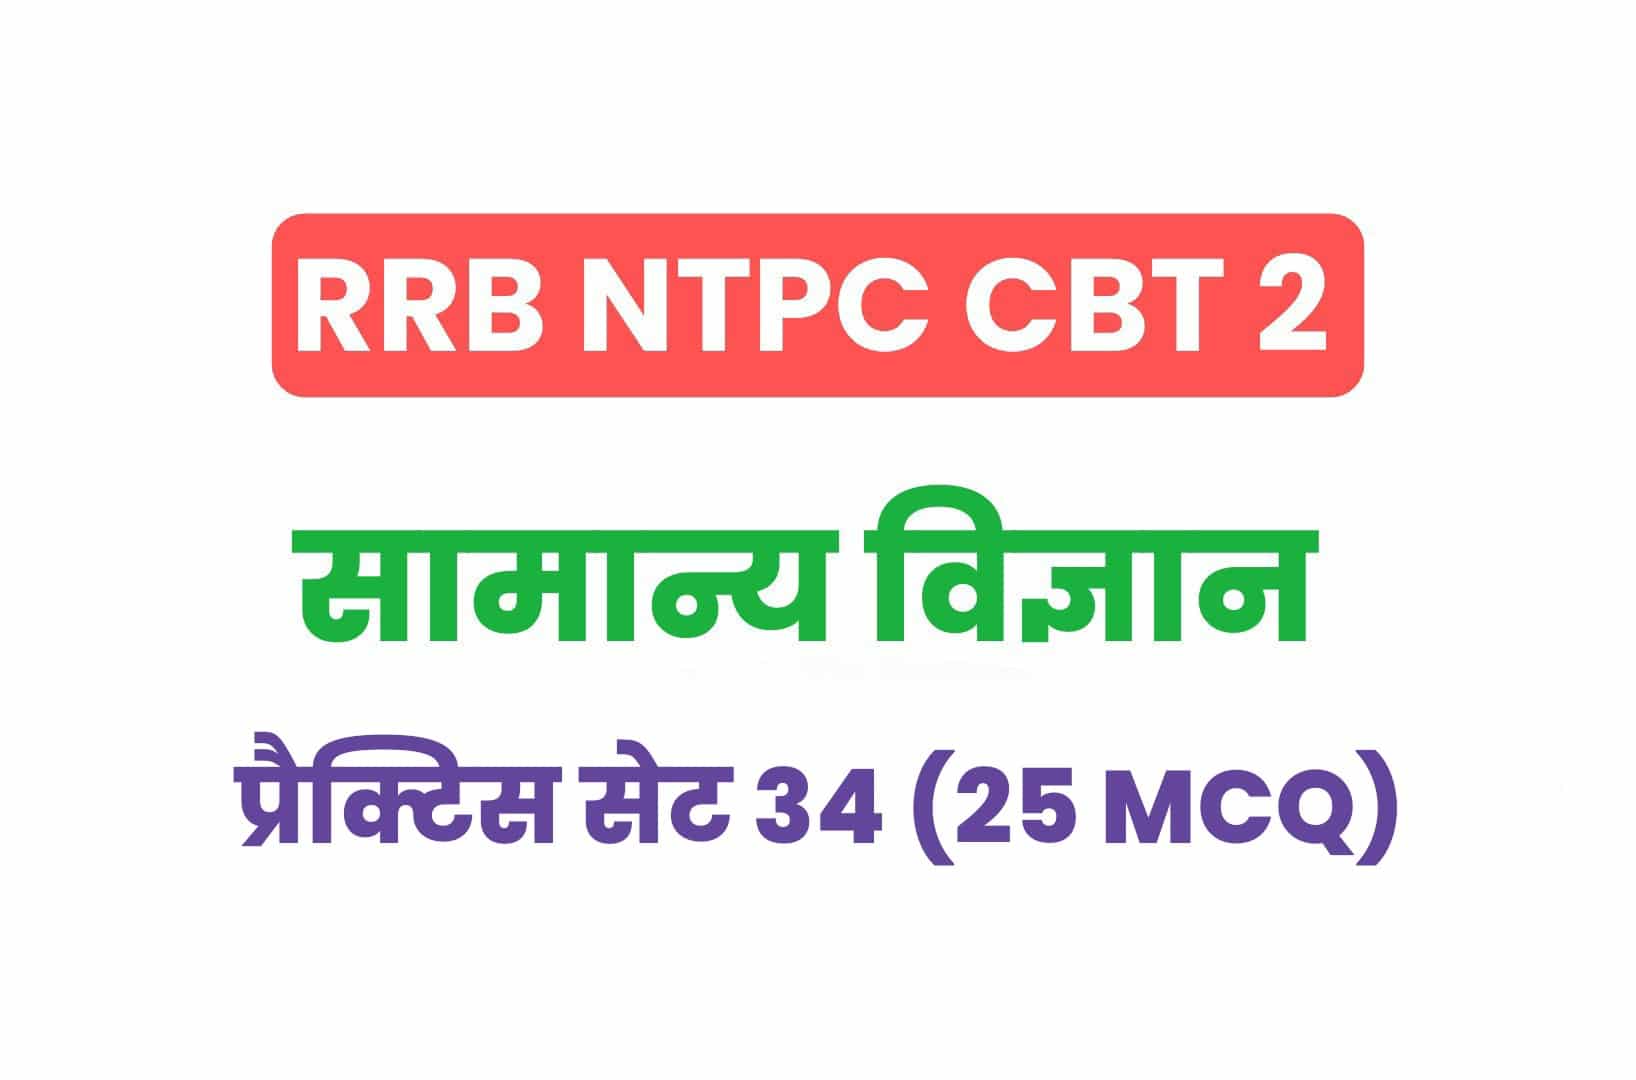 RRB NTPC CBT 2 Science प्रैक्टिस सेट 34: सामान्य विज्ञान के इन महत्वपूर्ण प्रश्नों का करें अध्ययन